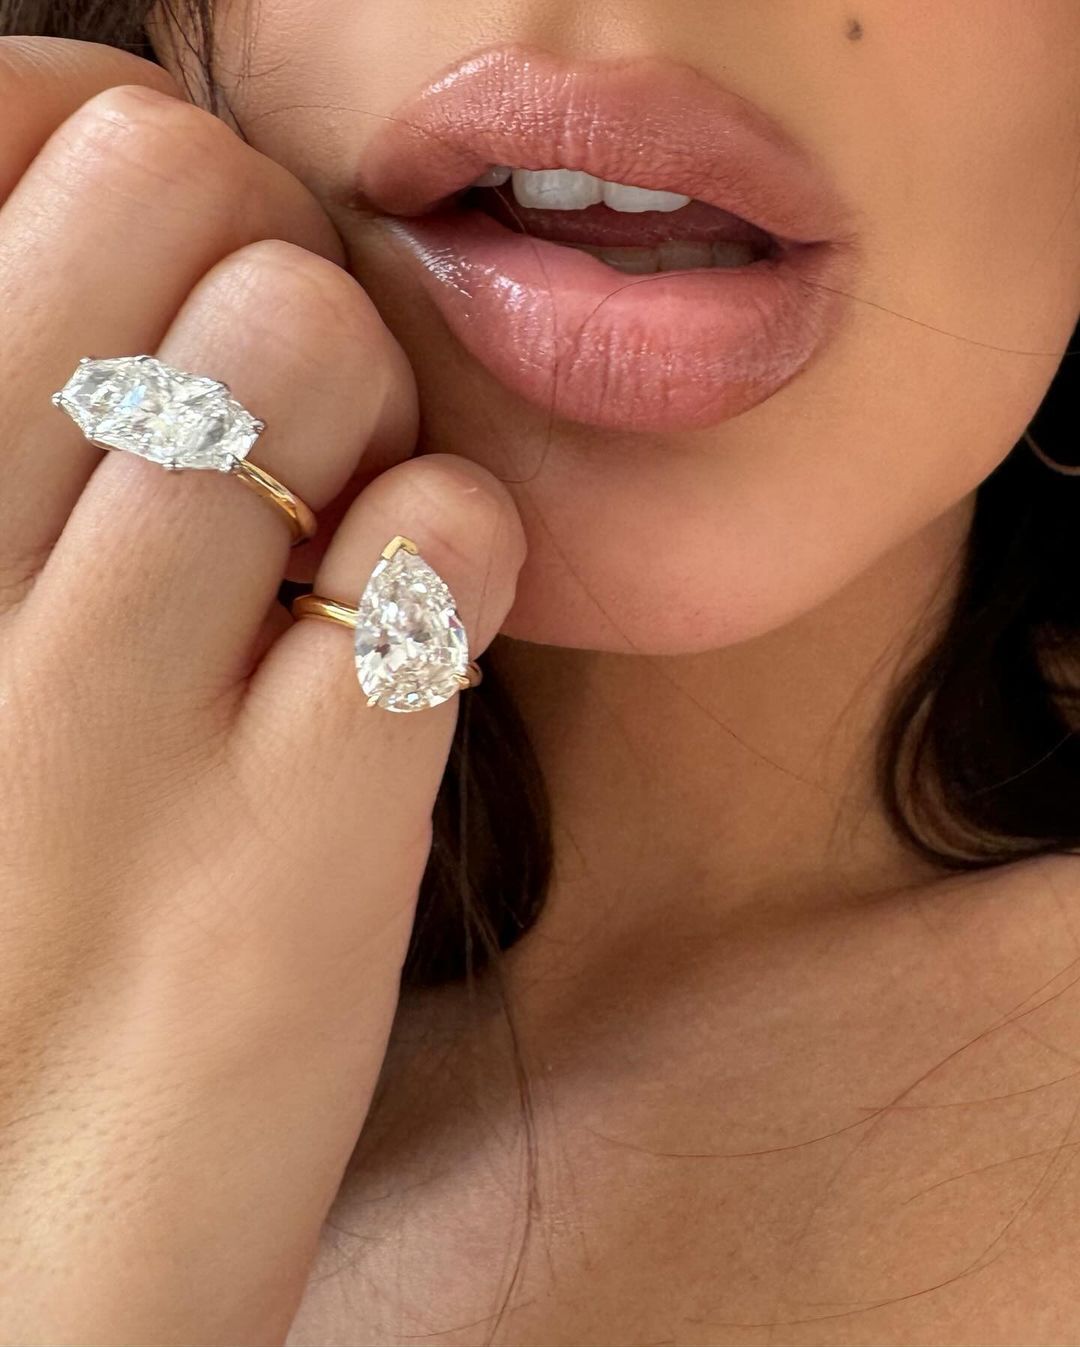 Емілі Ратаковські показала свої "обручки для розлучення" з гігантськими діамантами на відвертих фото